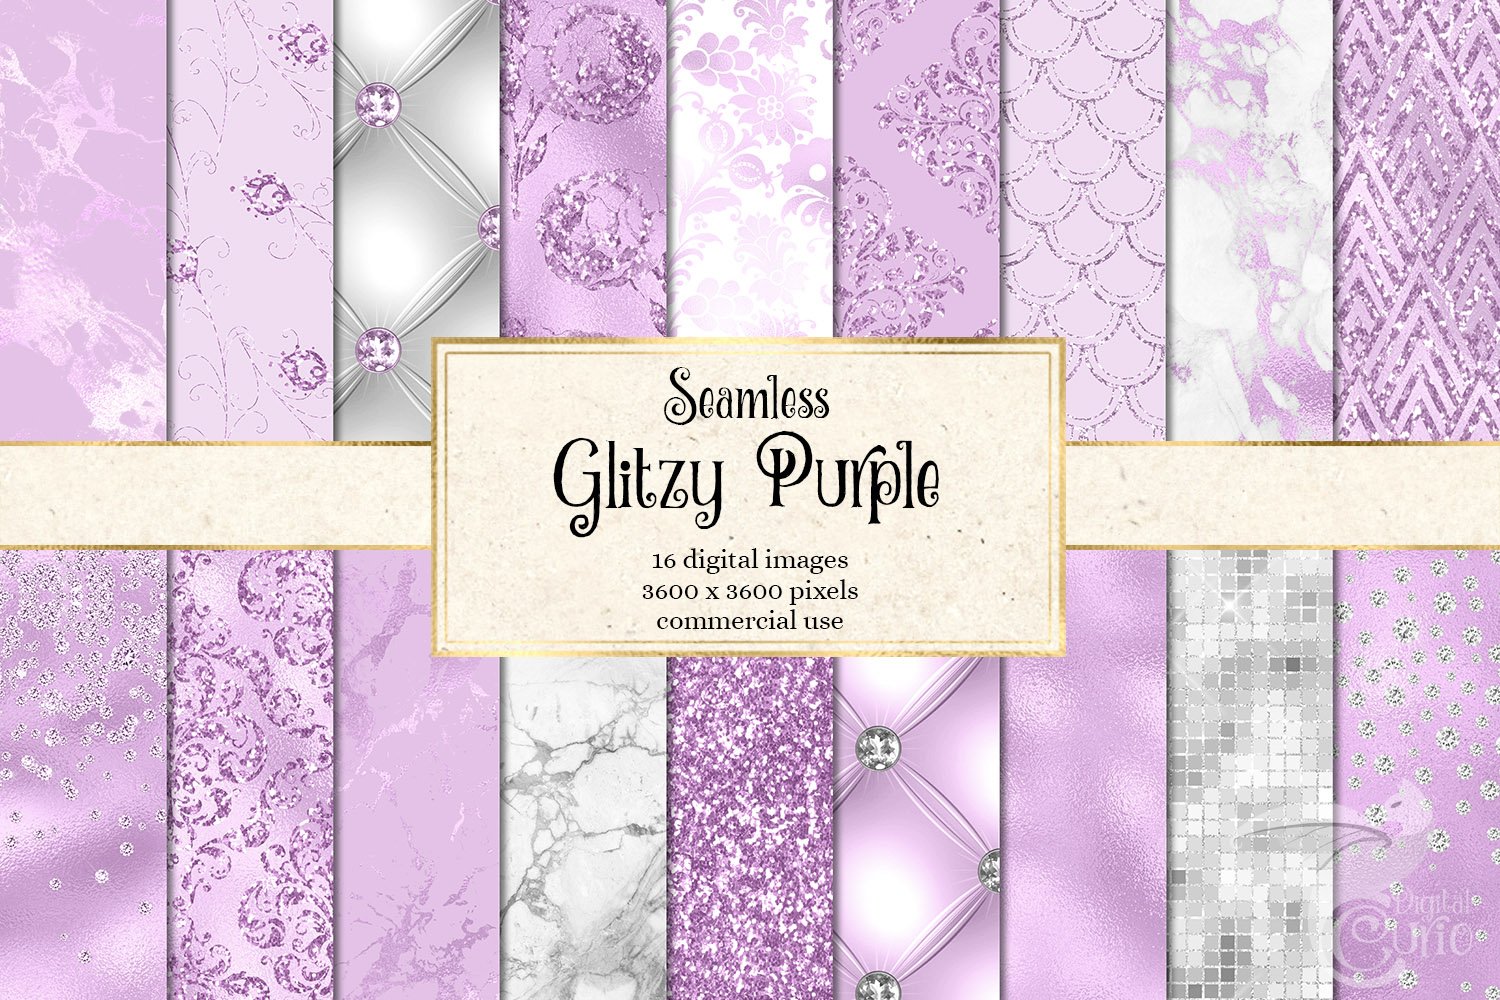 Glitzy Purple Digital Paper cover image.